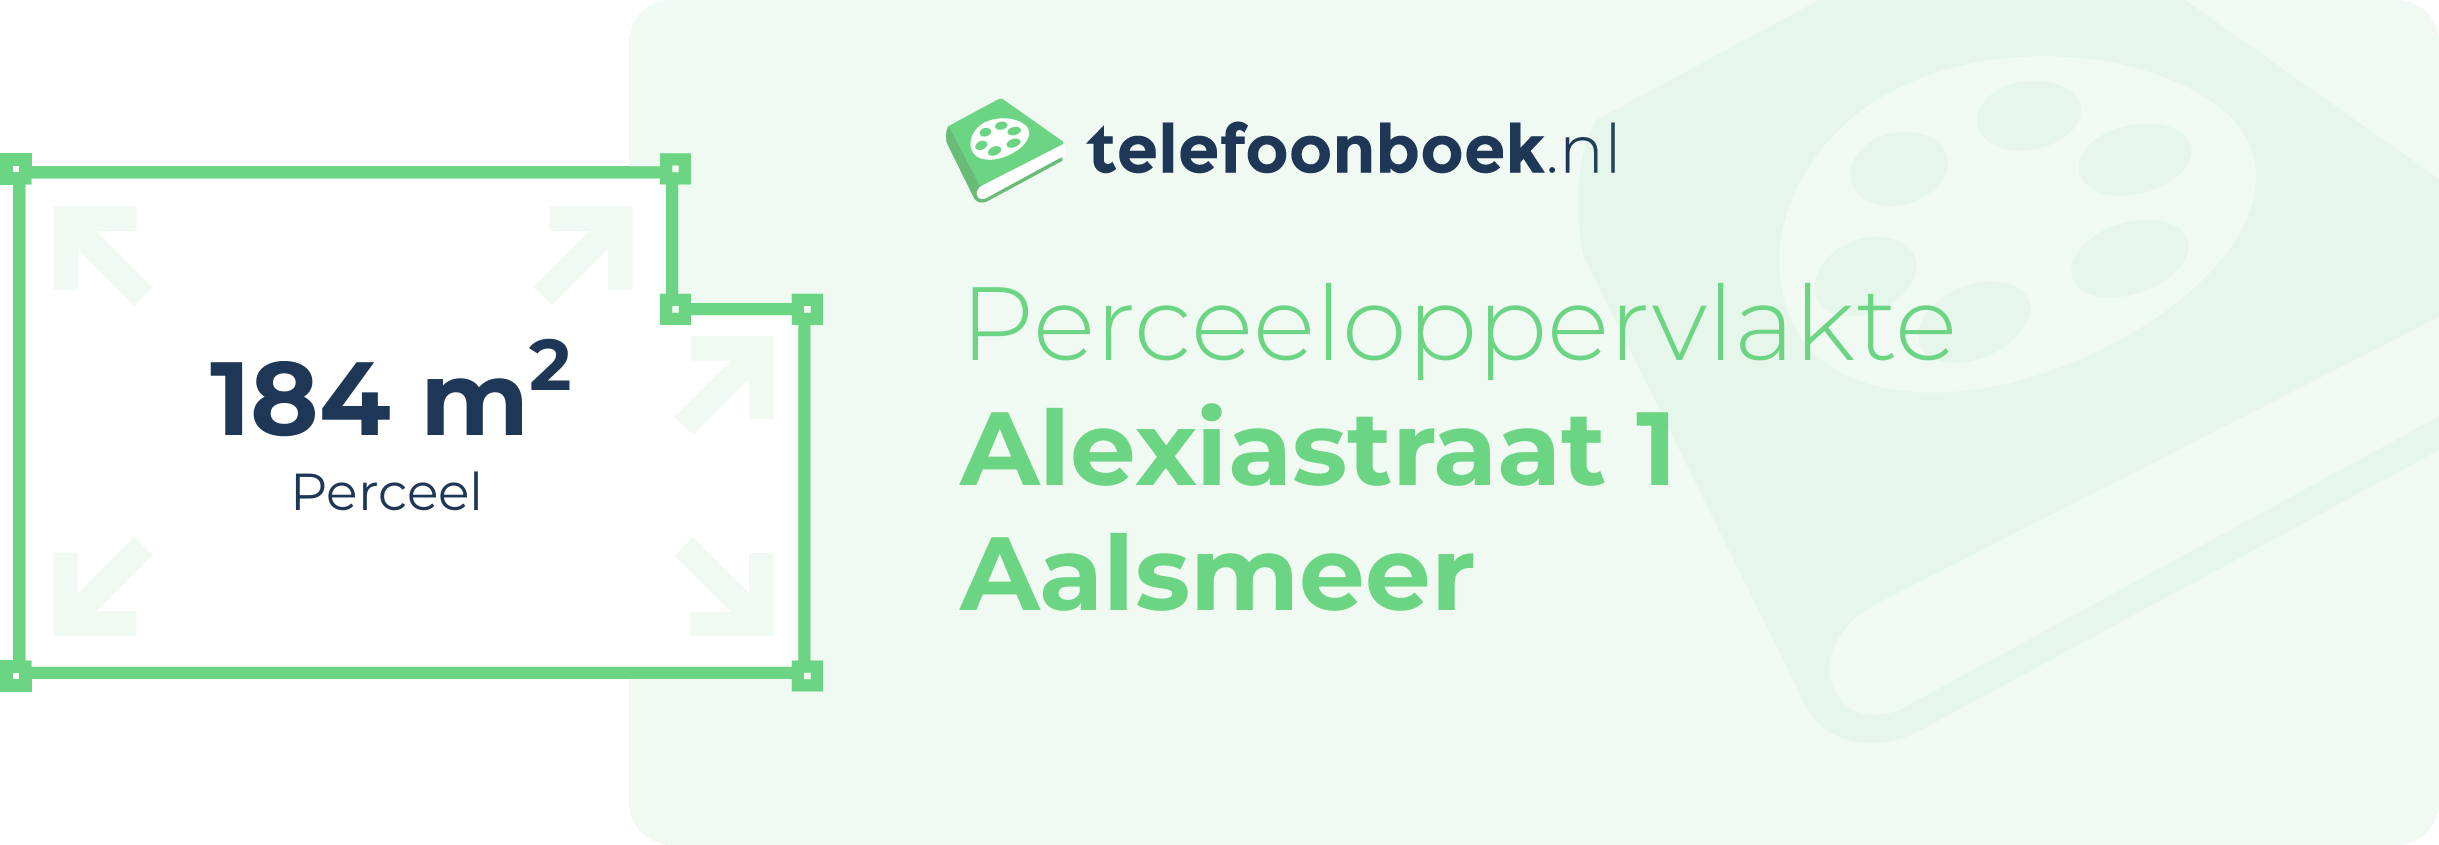 Perceeloppervlakte Alexiastraat 1 Aalsmeer